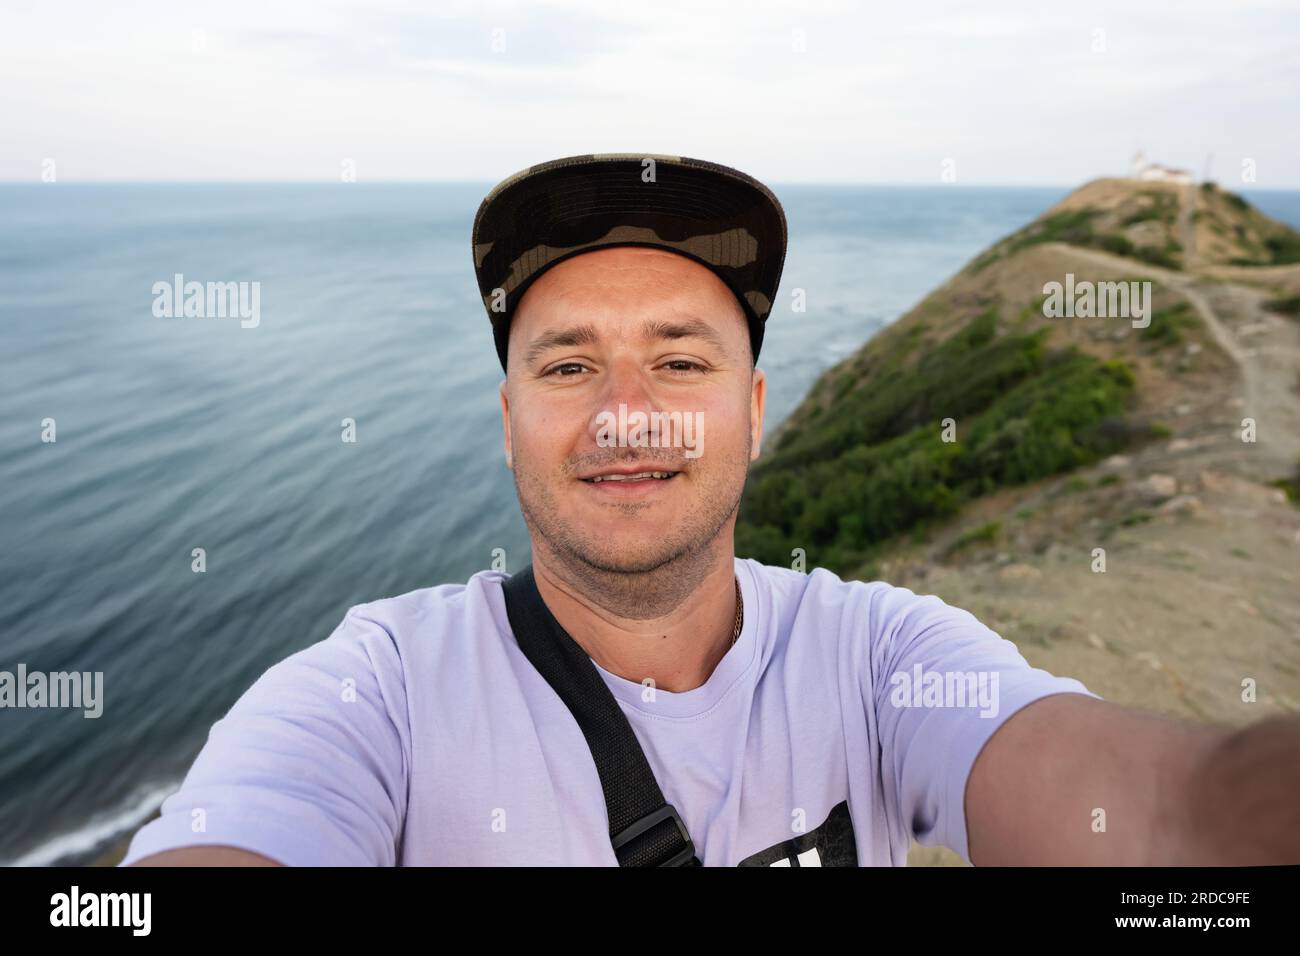 Ritratto di un uomo sorridente in cappellino che scatta un selfie sullo sfondo del mare. Capo Emine, costa del Mar Nero, Bulgaria. Foto Stock